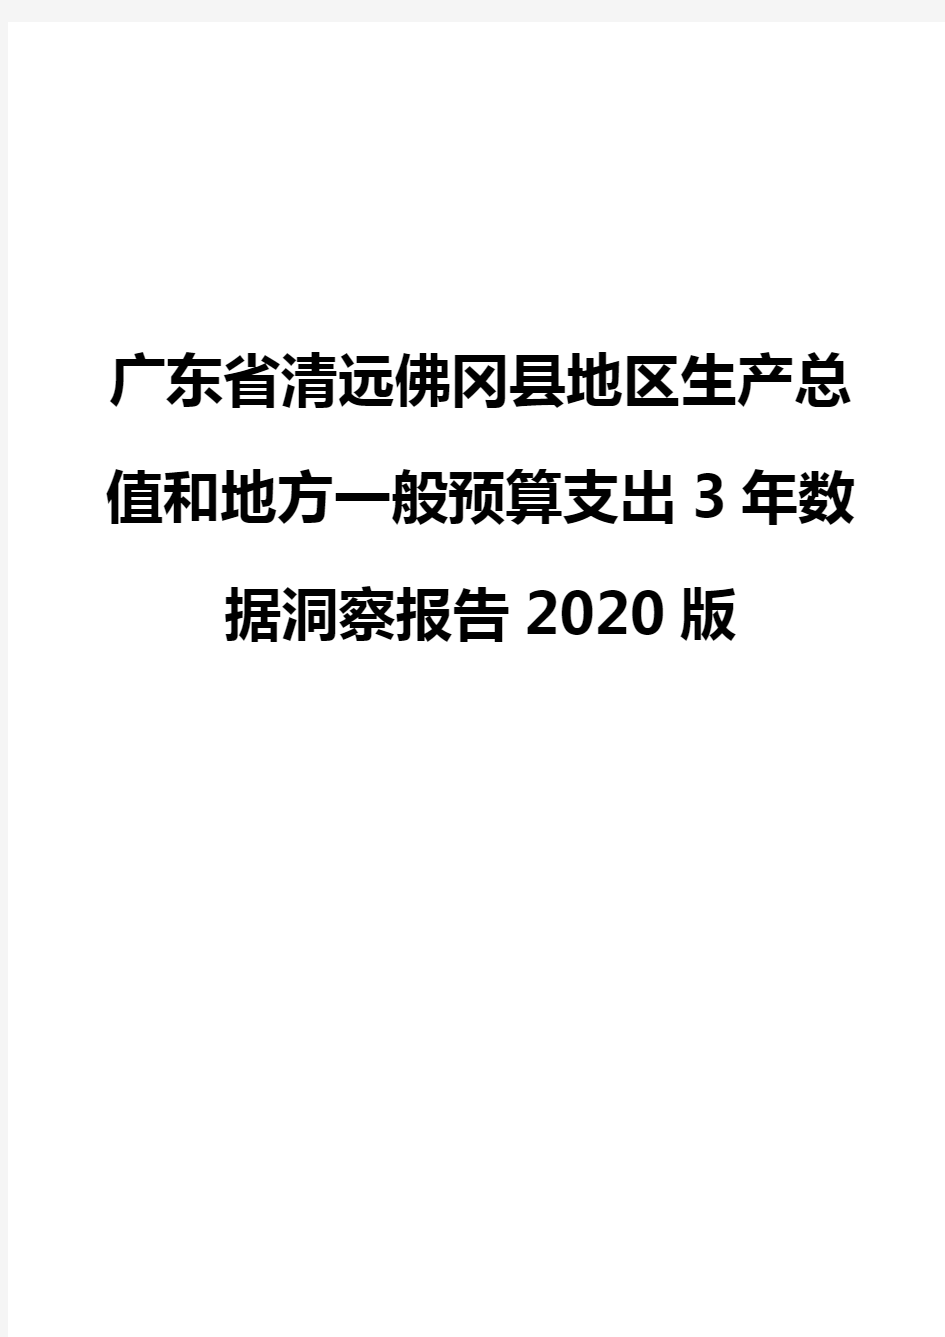 广东省清远佛冈县地区生产总值和地方一般预算支出3年数据洞察报告2020版